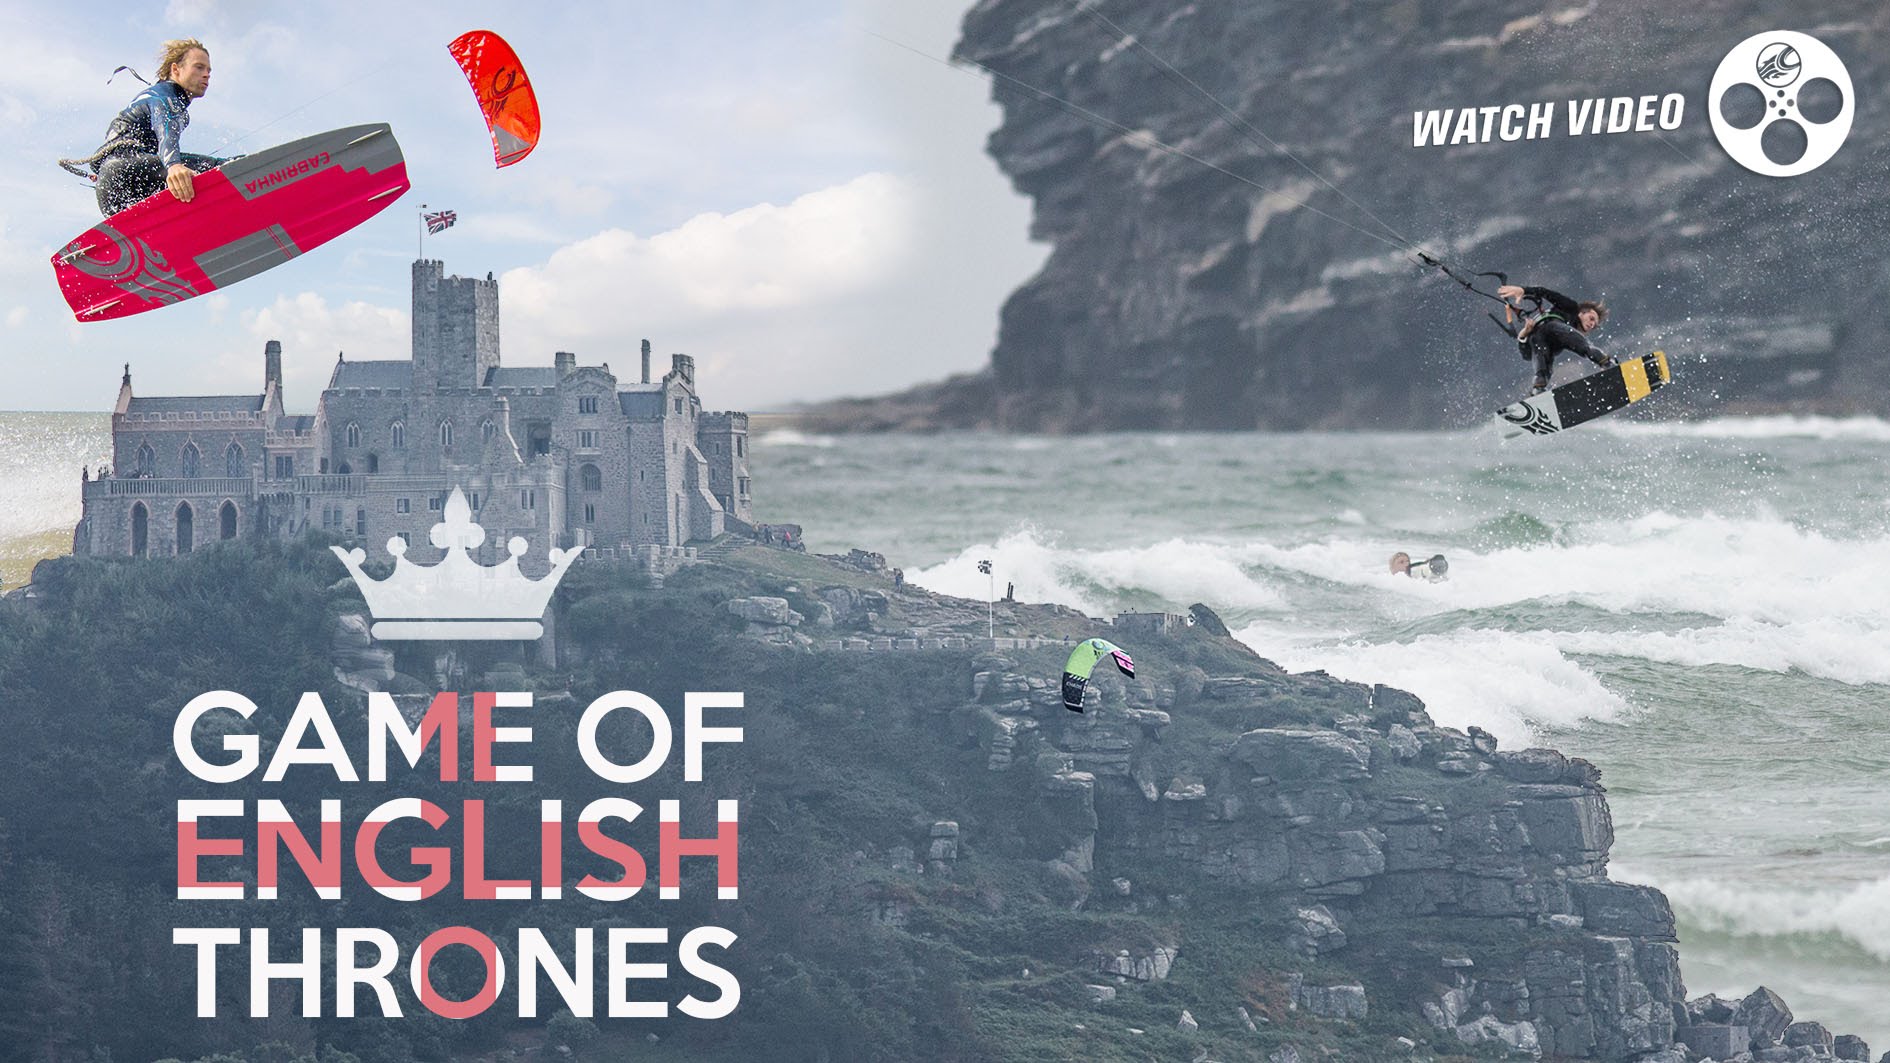 game of english thrones - Game of English Thrones